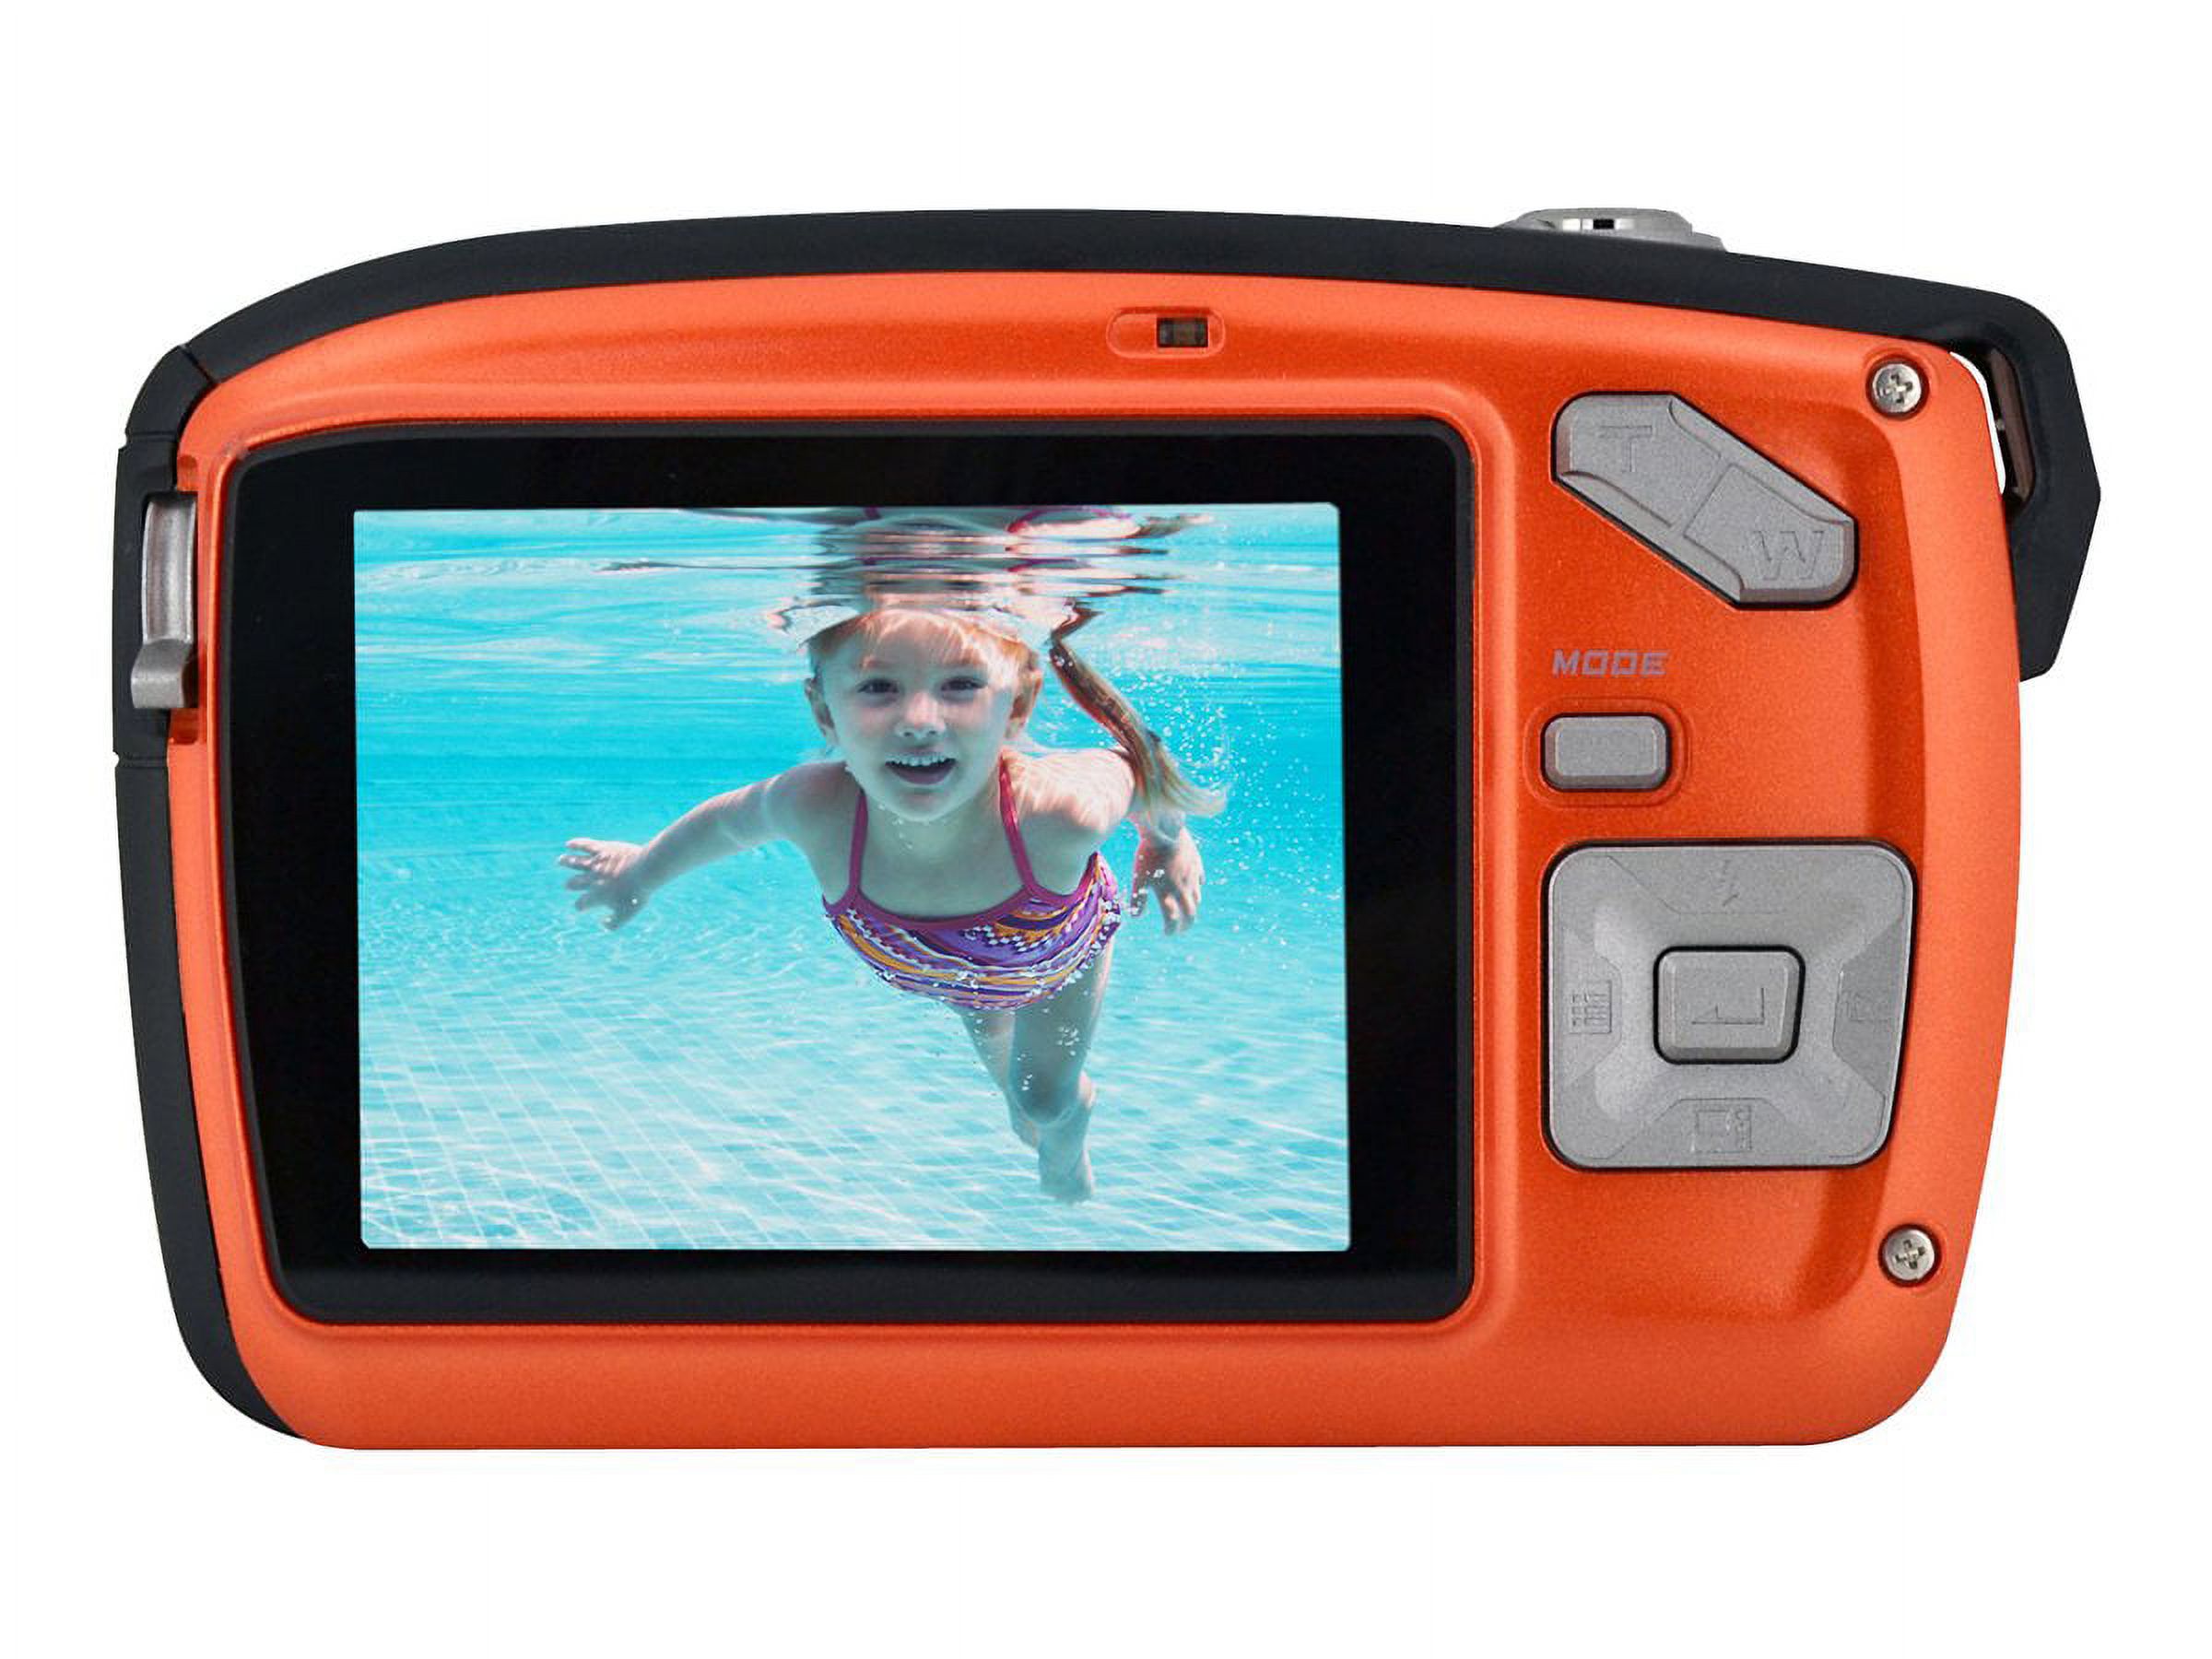 Bell+Howell Orange Splash2 WP16 Digital Camera with 16 Megapixels and 4x Digital Zoom - image 3 of 3